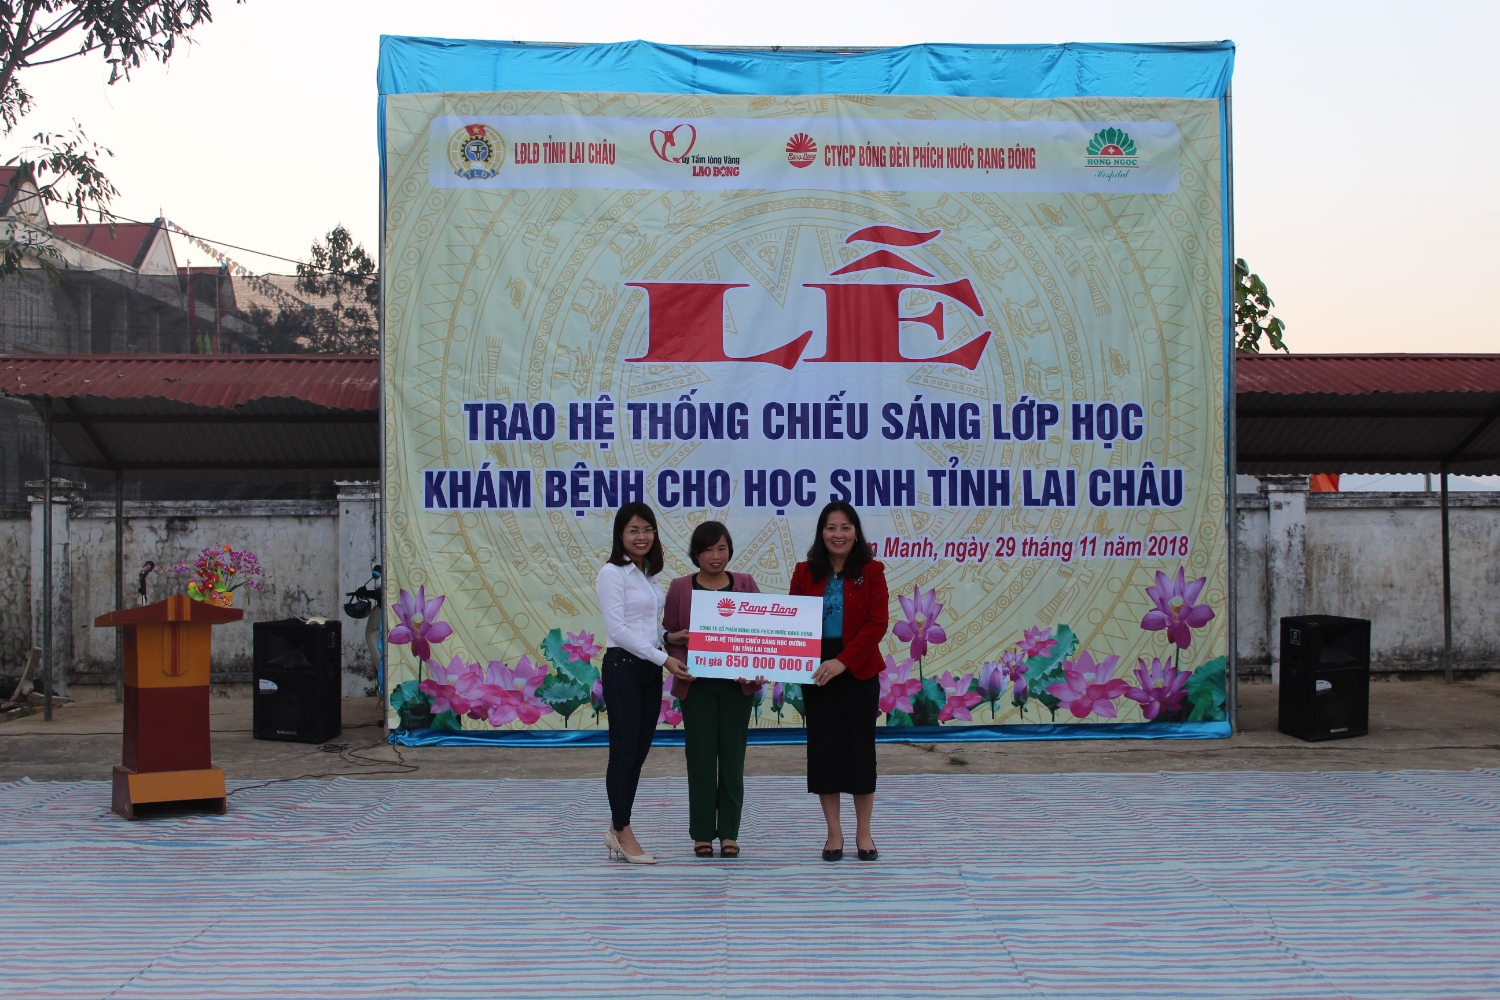 Đồng chí Phạm Việt Hòa, đại diện Công ty Cổ phần bóng đèn phích nước  Rạng Đông trao hệ thống chiếu sáng bằng đèn Led chất lượng cao  cho các trường học trên địa bàn tỉnh Lai Châu